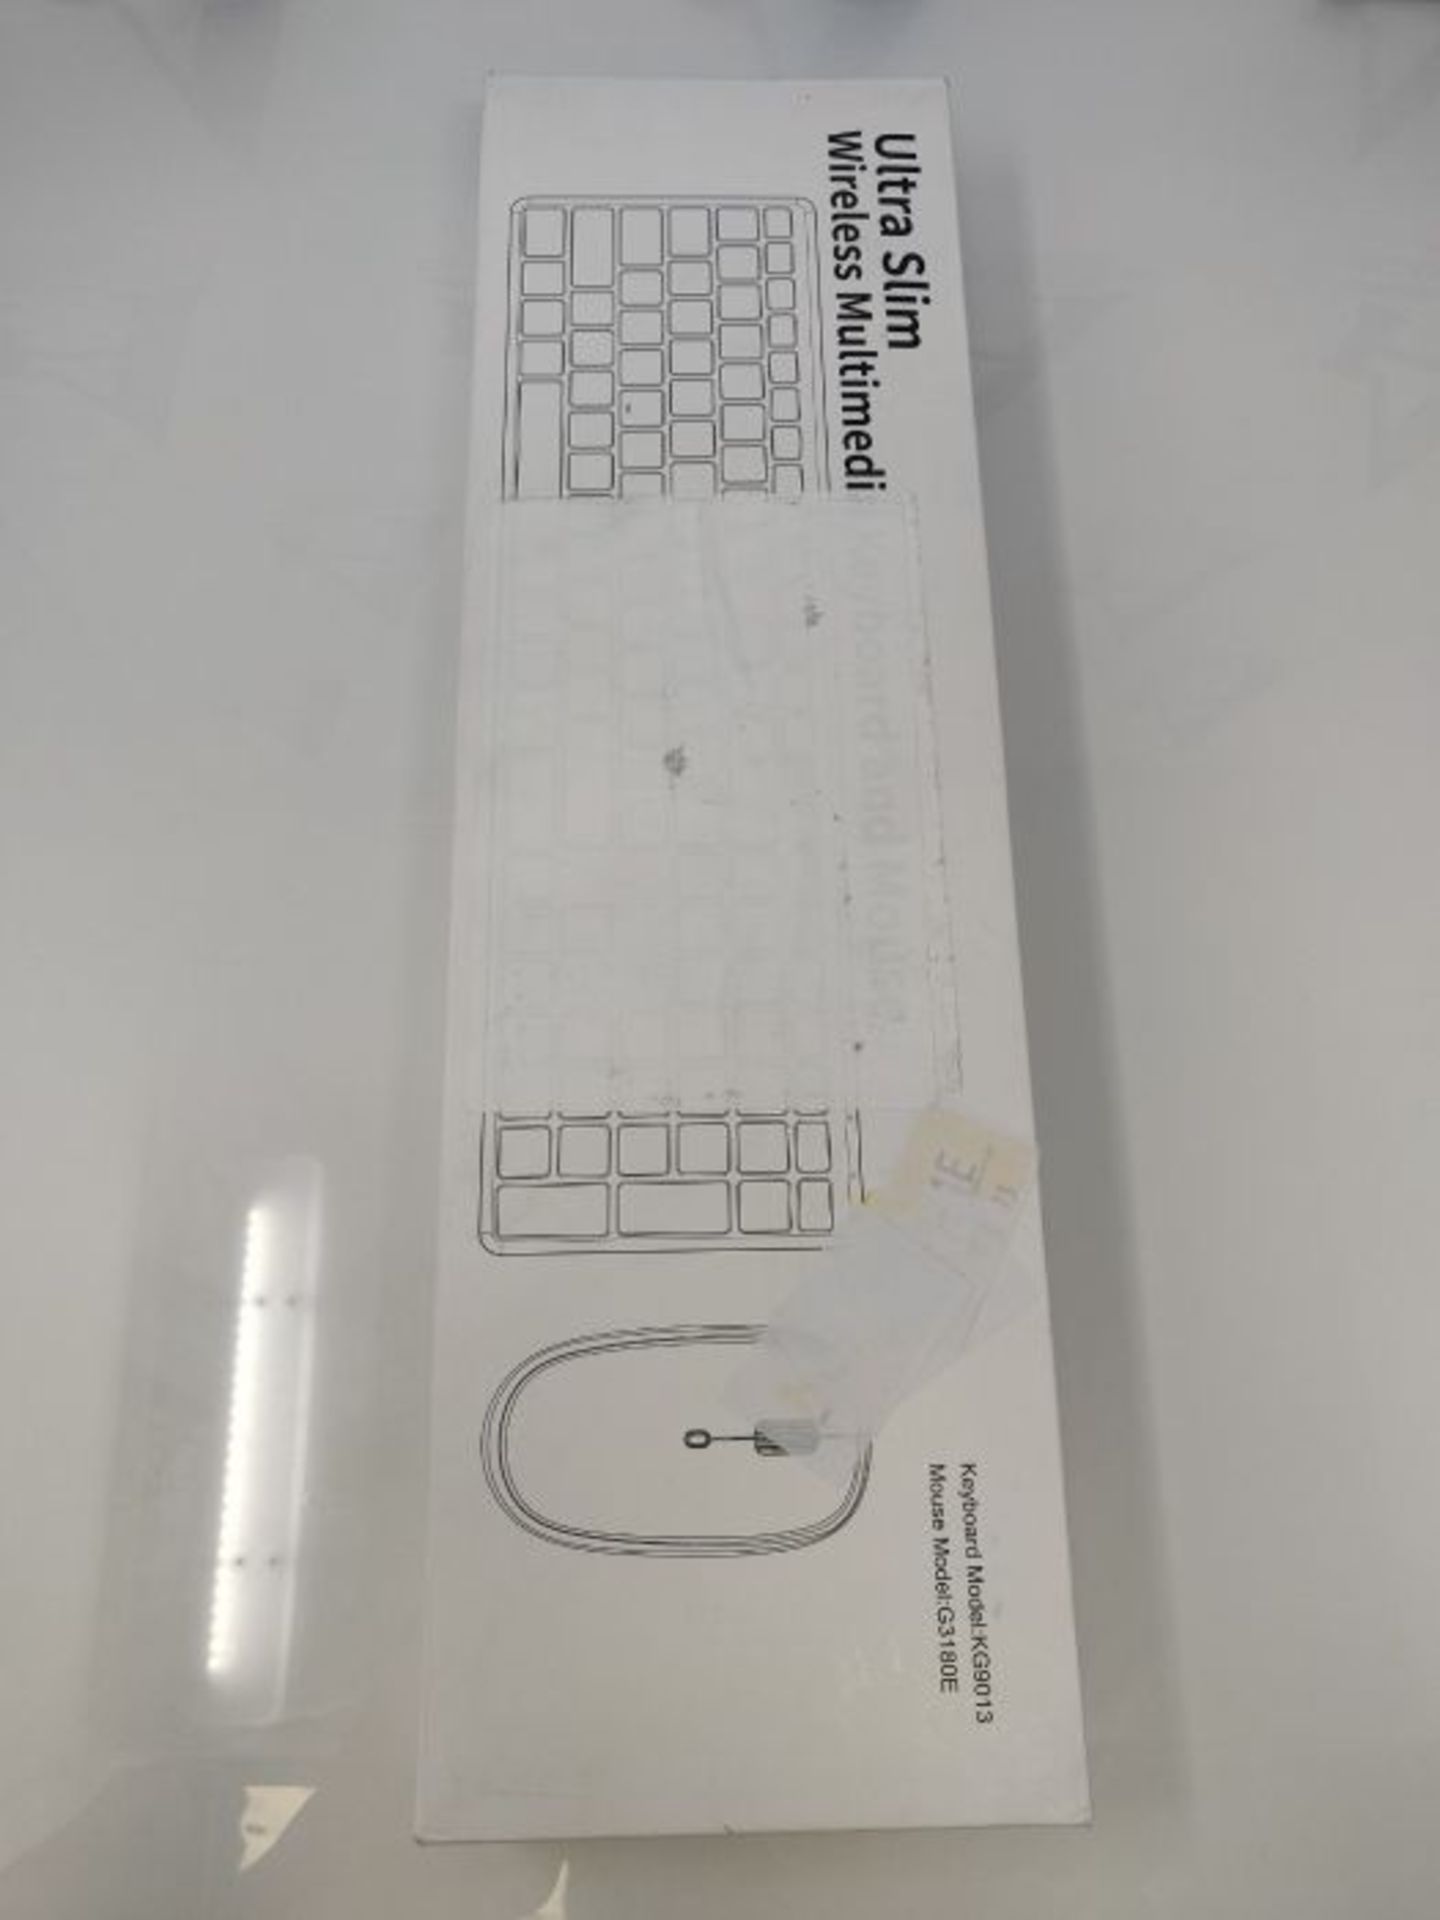 Tastatur Kabellos mit Maus, TedGem Tastatur Maus Set, USB Tastatur und Maus, 2,4 G USB - Image 2 of 3